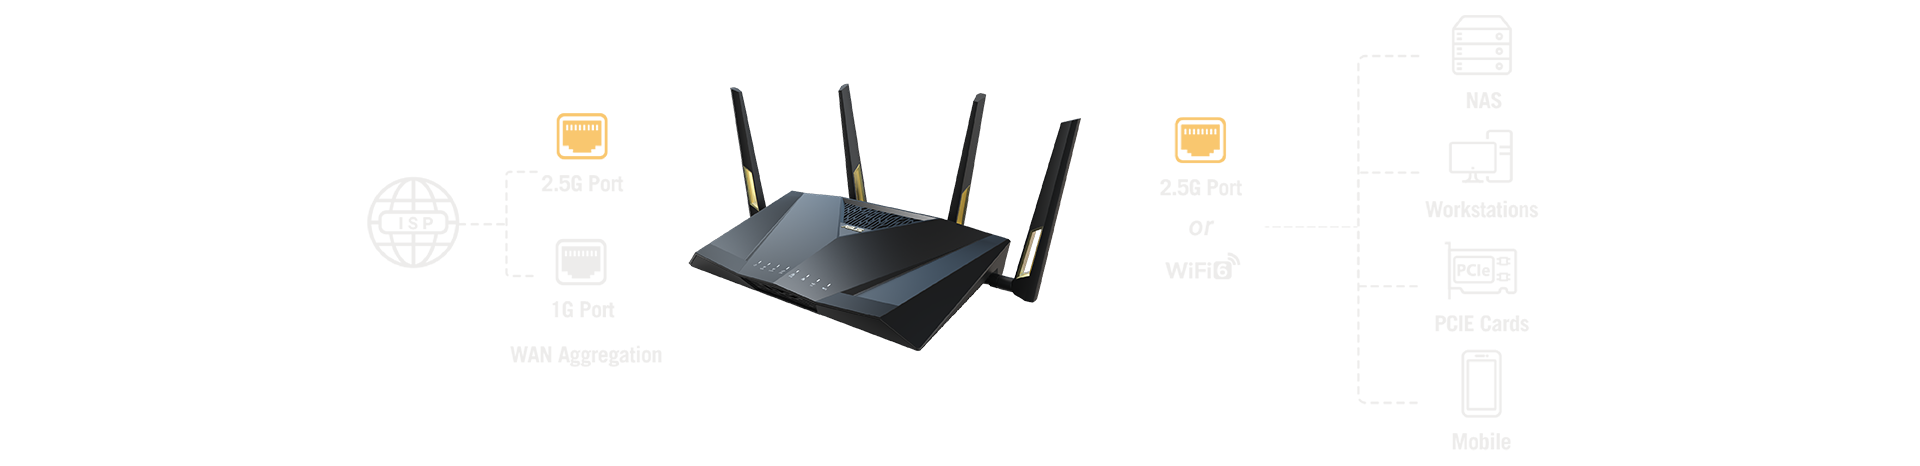 Функція об’єднання каналів WAN дає змогу об’єднати пропускну здатність портів 2.5G Ethernet і Gigabit Ethernet, щоб отримати підключення WAN на швидкості до 3,5 Гбіт/с. Ця швидкість достатньо висока навіть за мірками сучасних Інтернет-провайдерів, які пропонують високошвидкісний доступ.